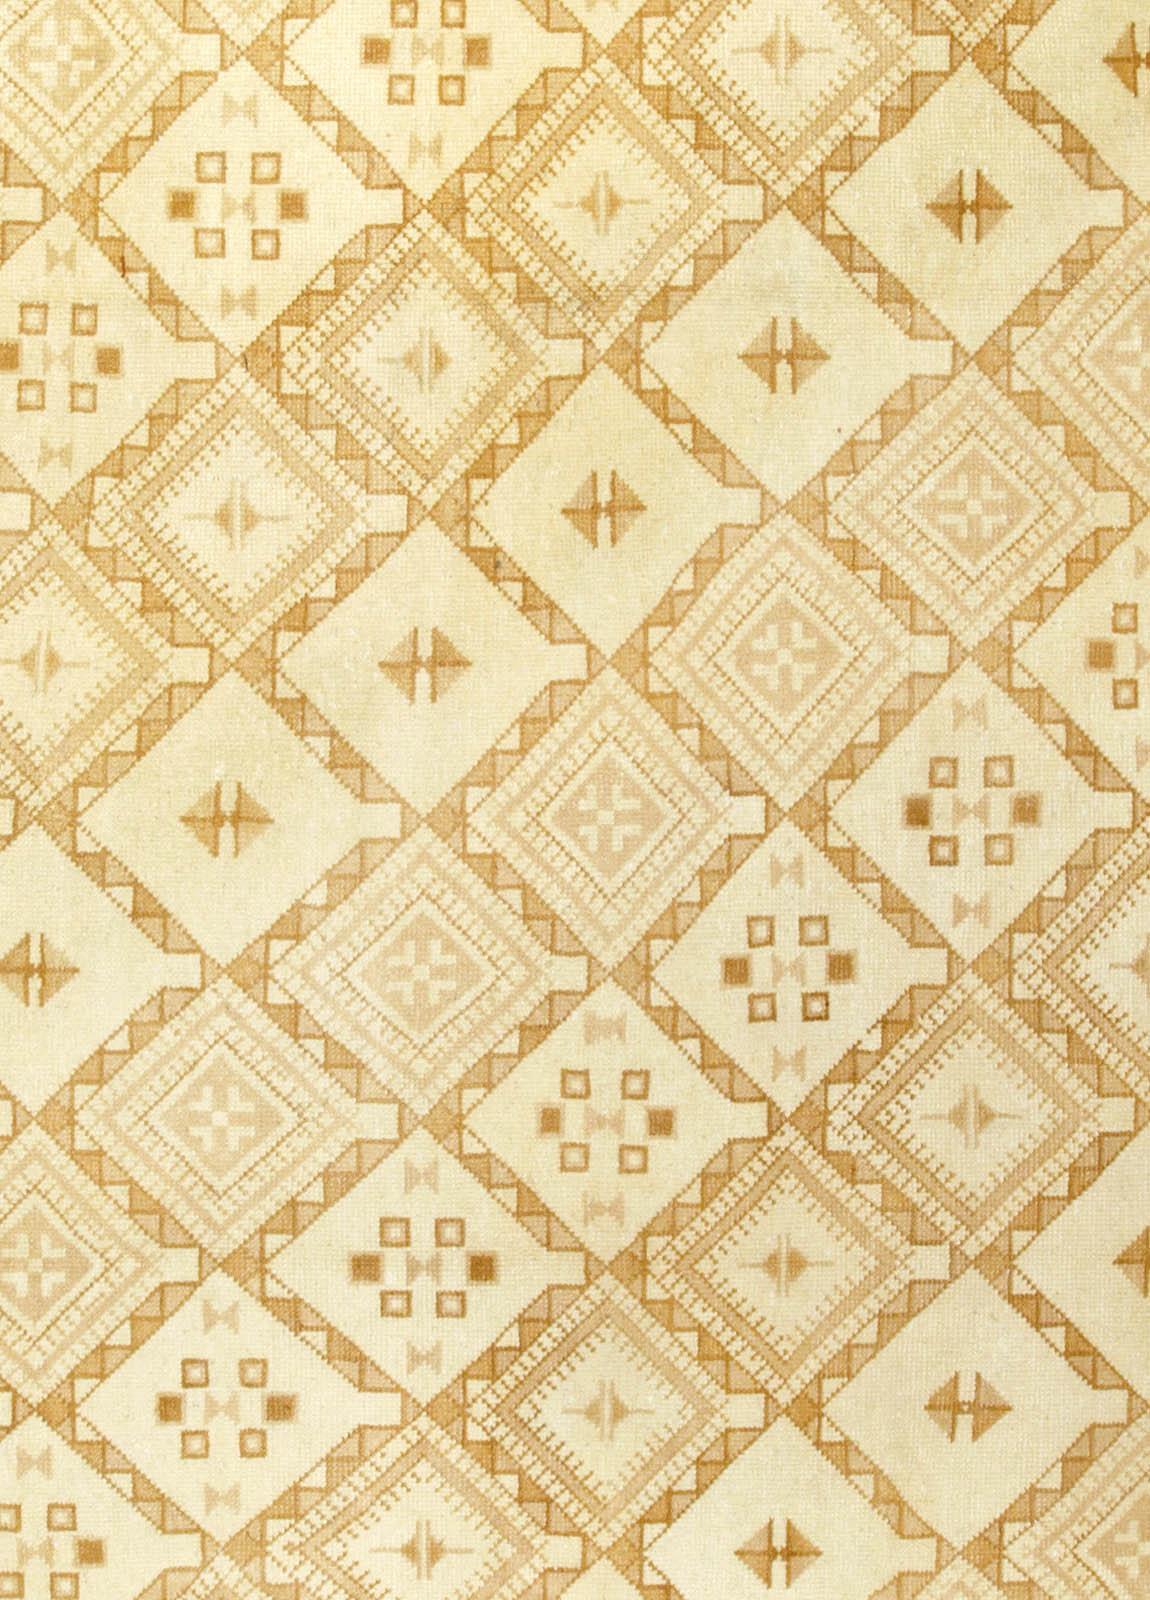 Vintage Marokko beige handgeknüpfter Wollteppich
Dieser auffällige marokkanische Teppich im Vintage-Stil weist ein durchgehendes Gitterfeld in Gelb-, Beige- und Brauntönen auf. Die komplizierten geometrischen Formen, die die Umrisse des Gitters